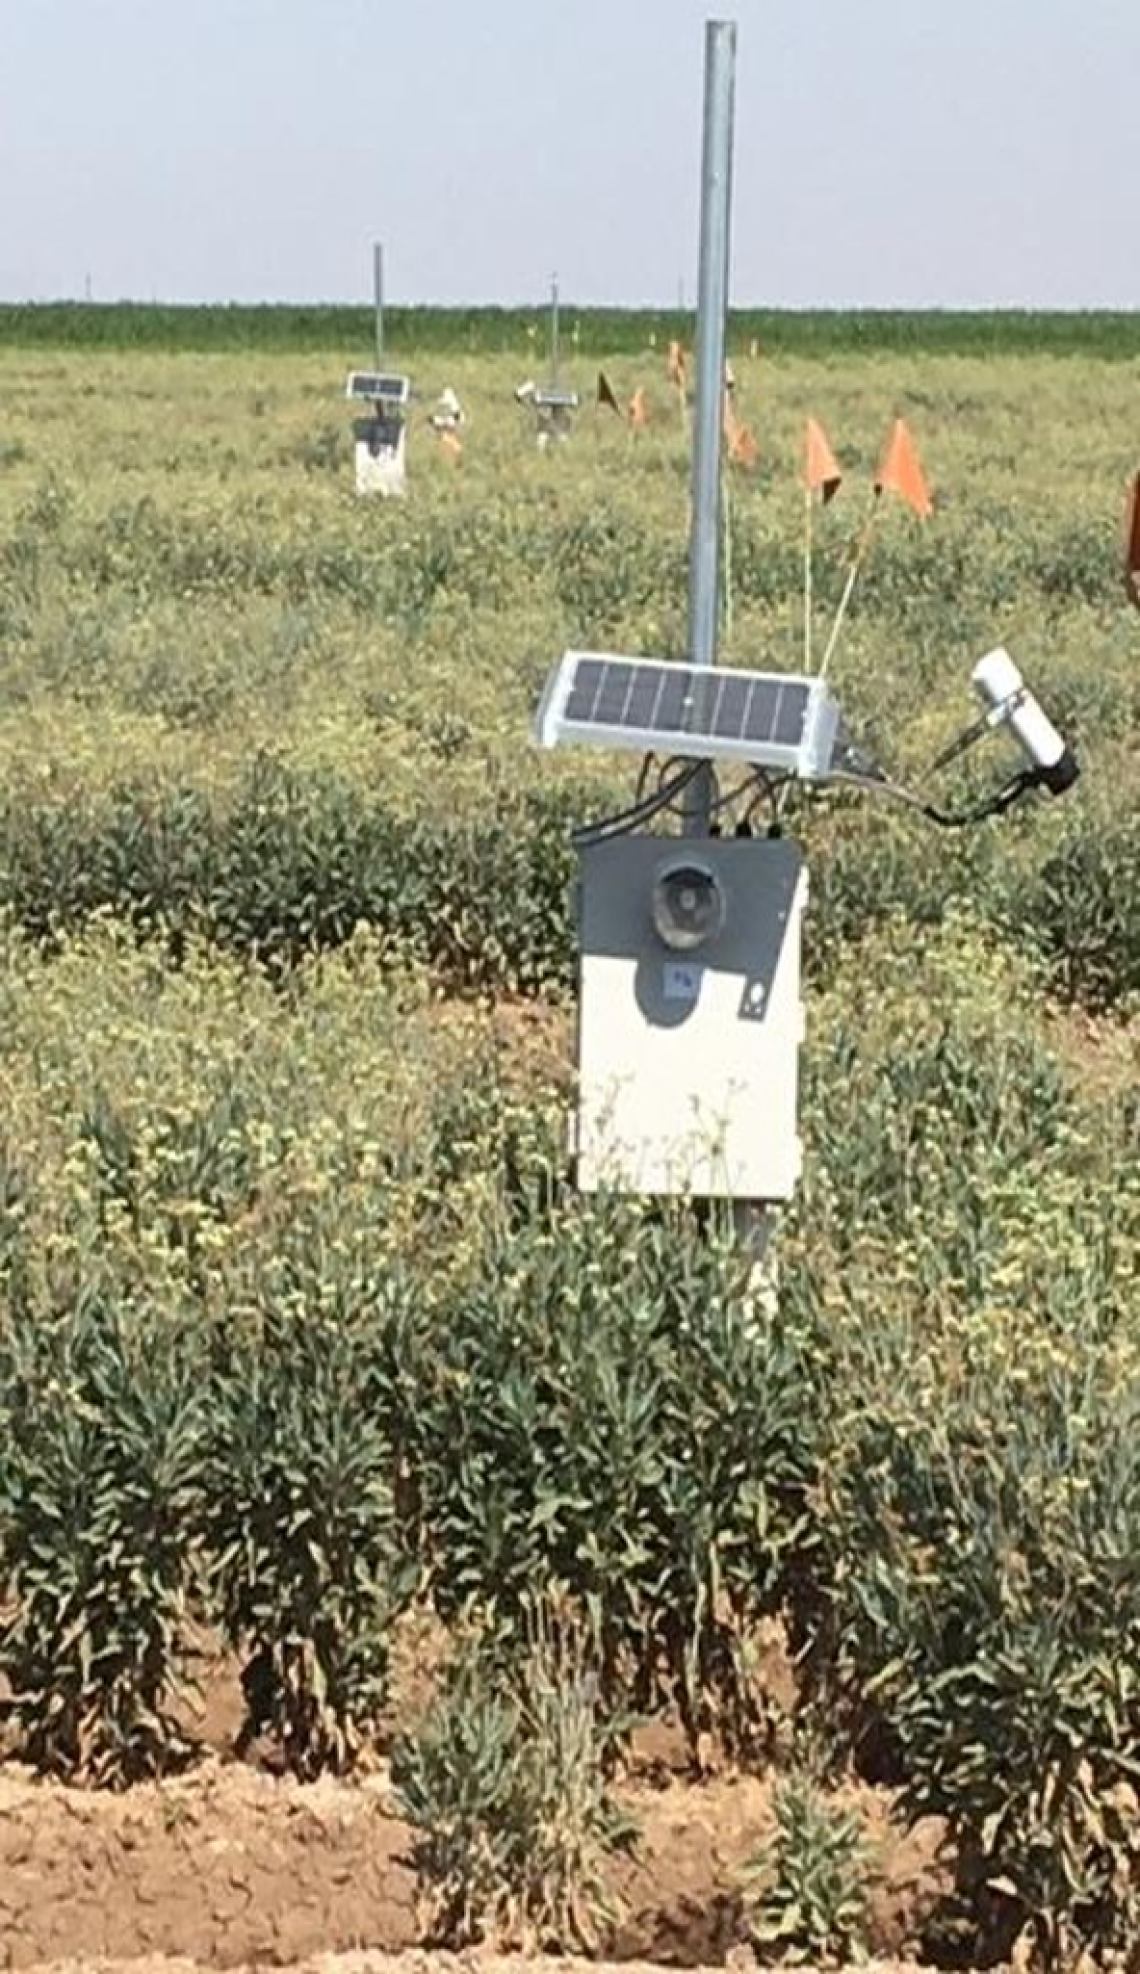 A sensor installed in a guayule field